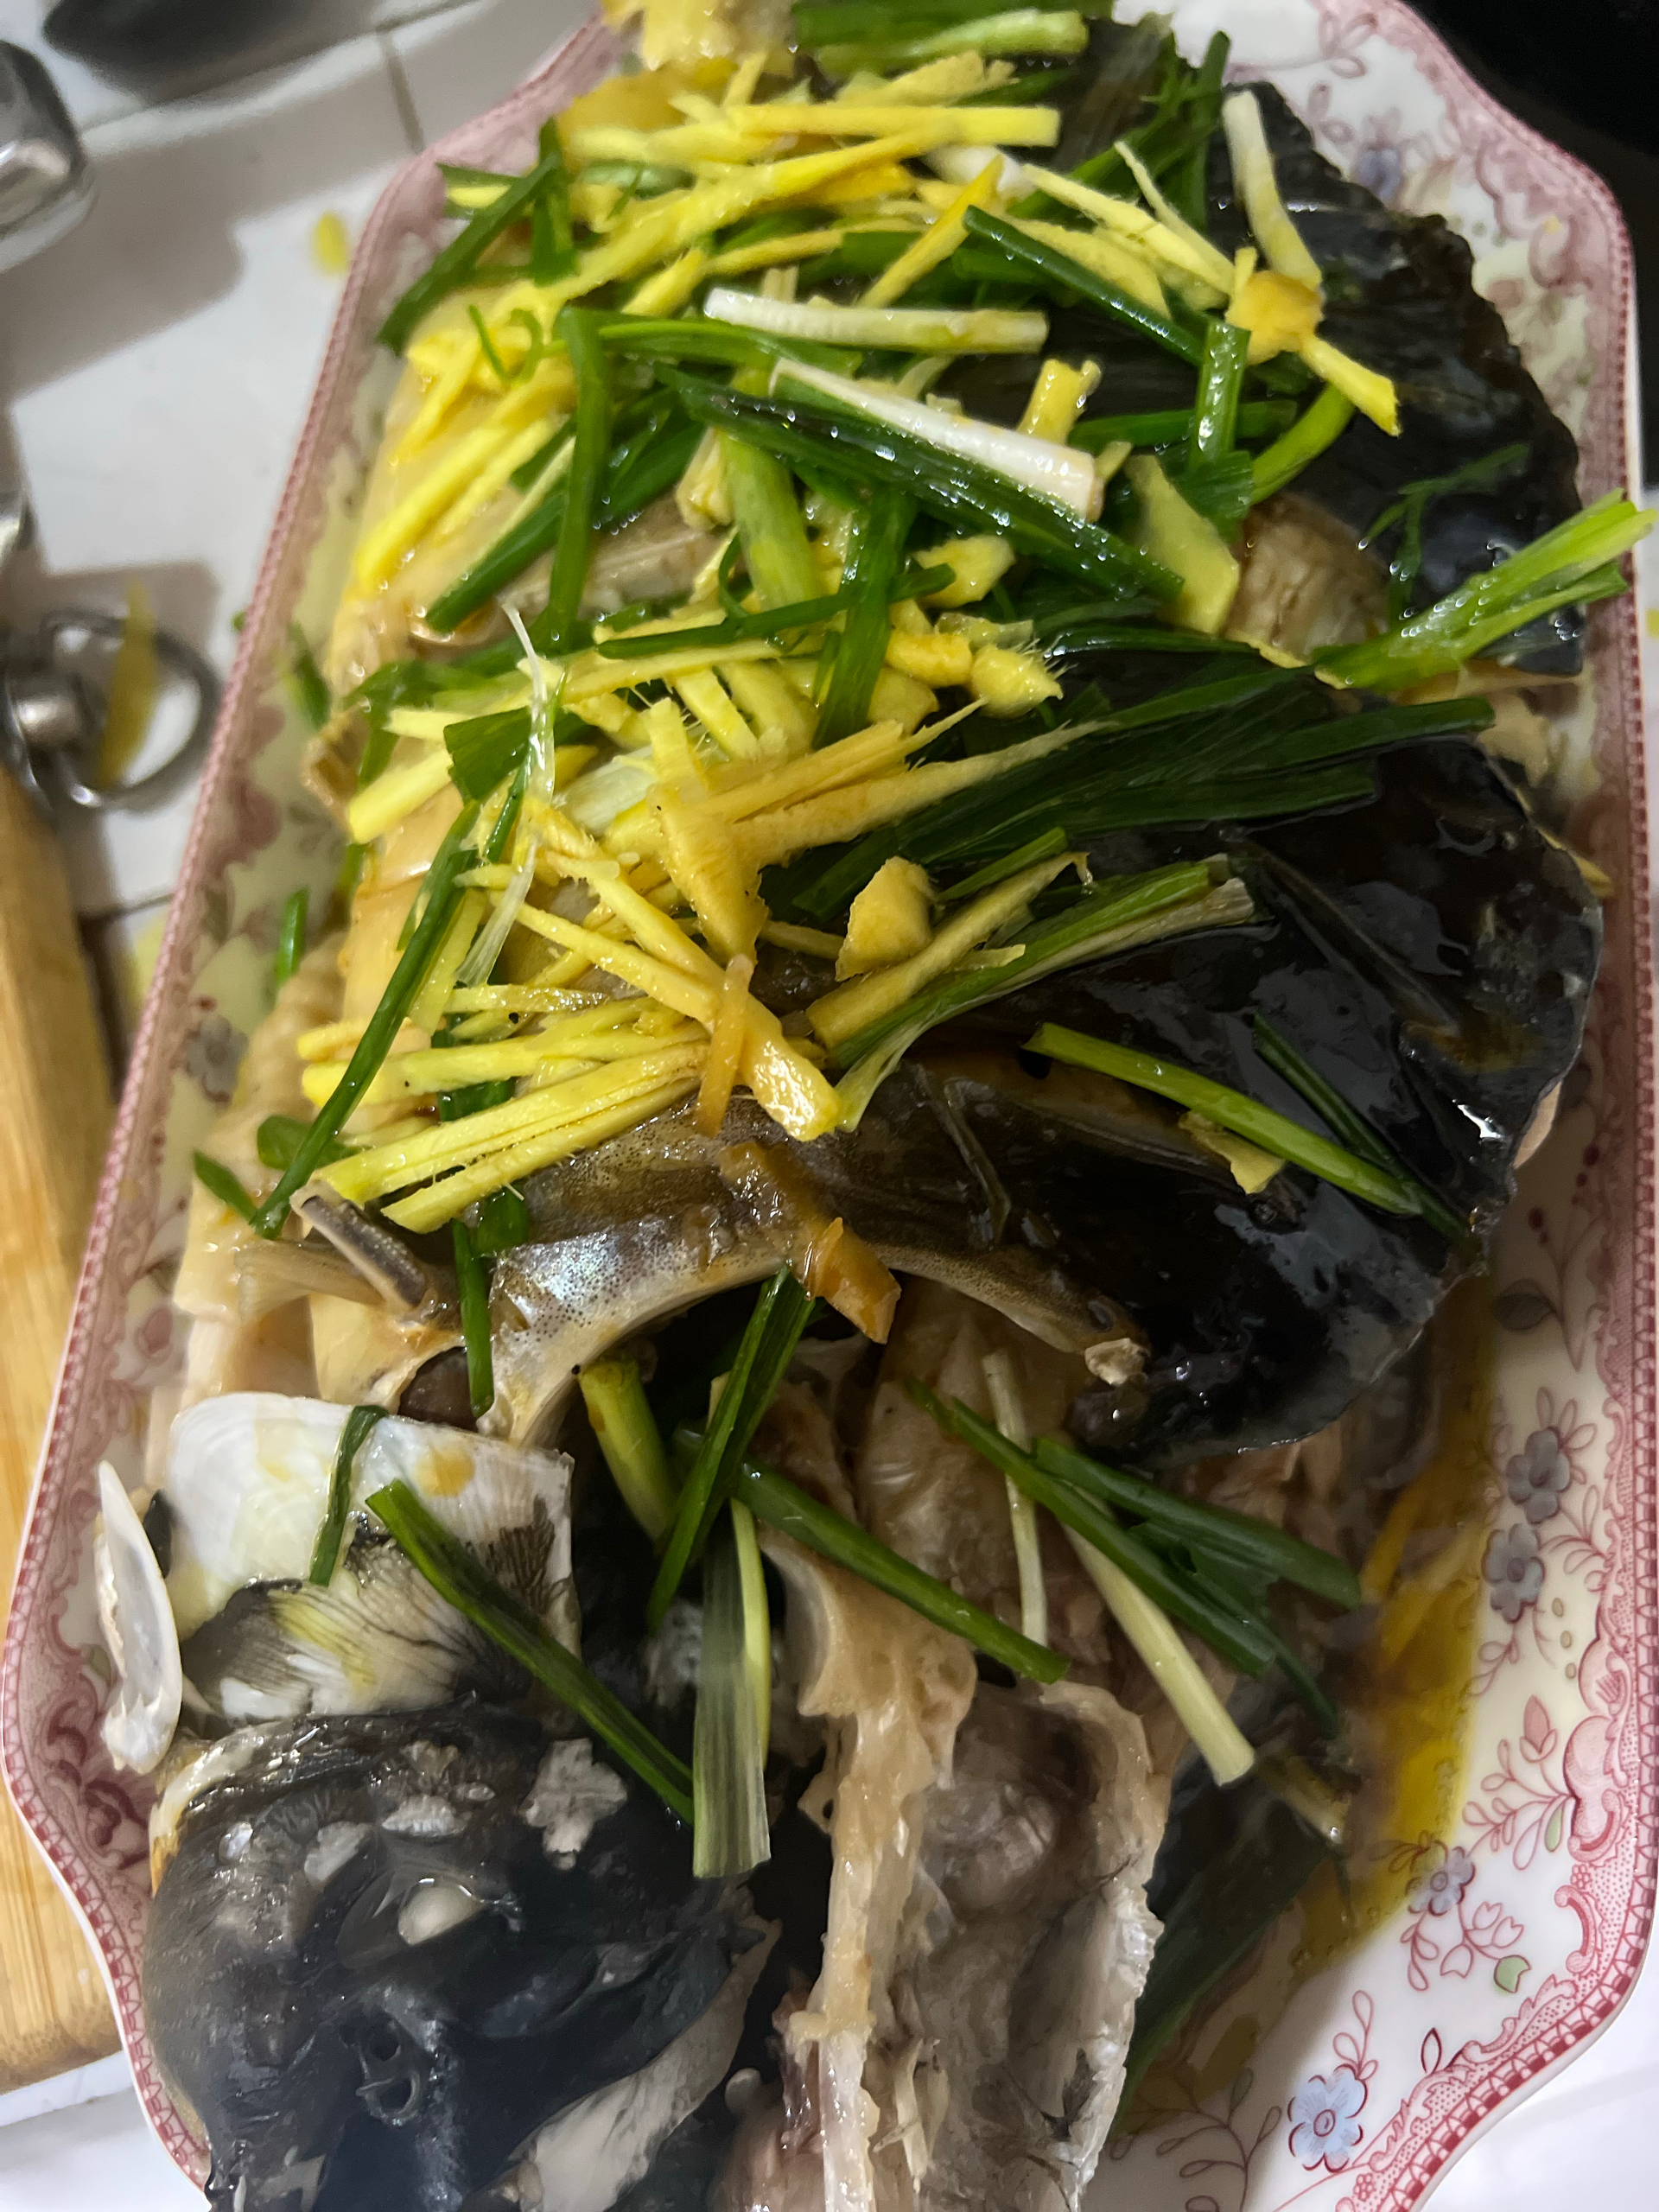 清蒸桂花鱼(鳜鱼)，适合各种清蒸鱼，超级鲜美